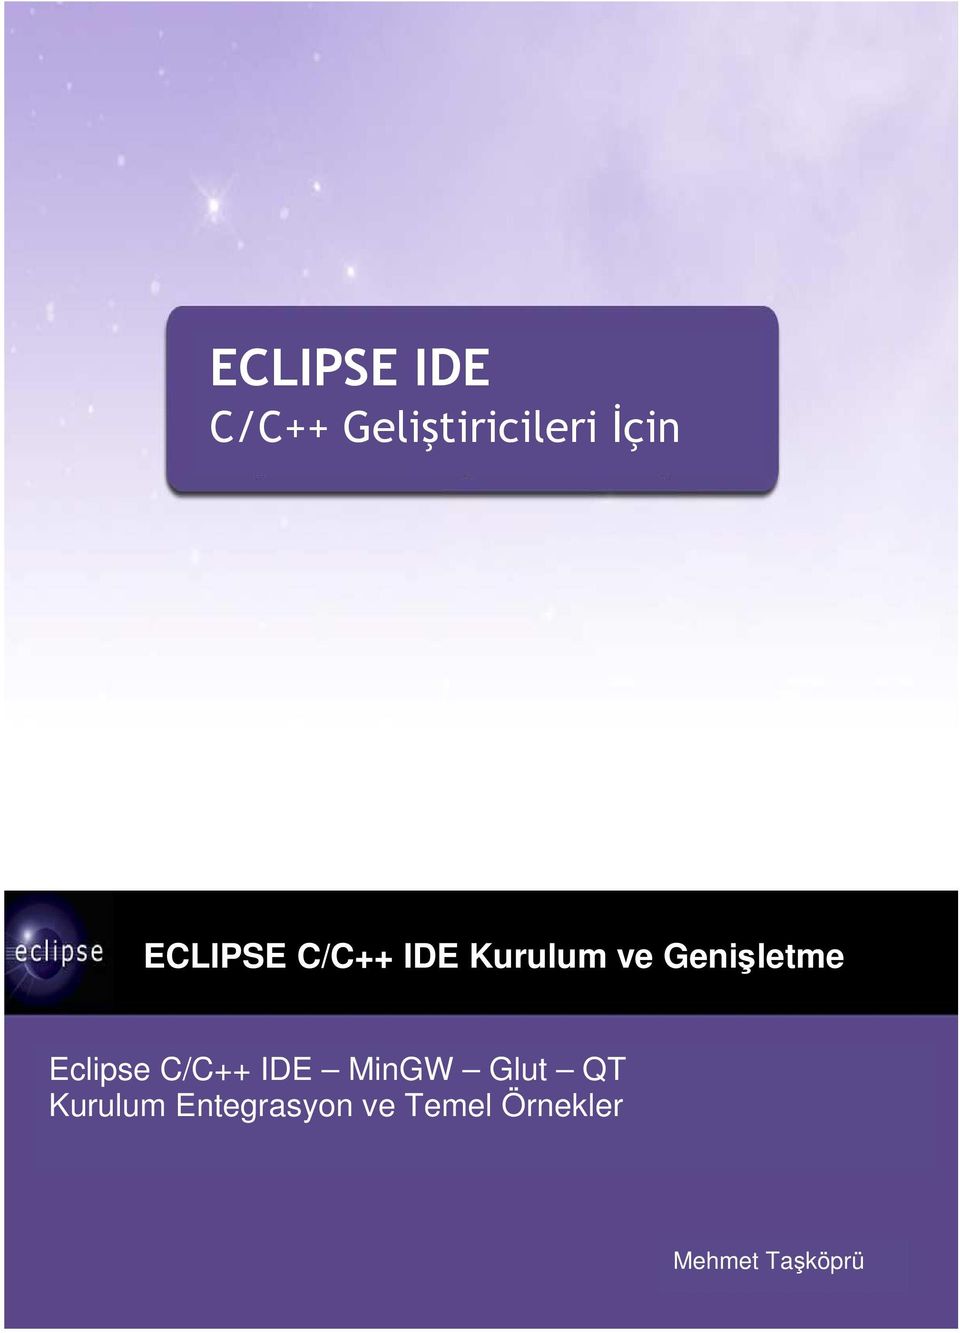 Eclipse C/C++ IDE MinGW Glut QT Kurulum